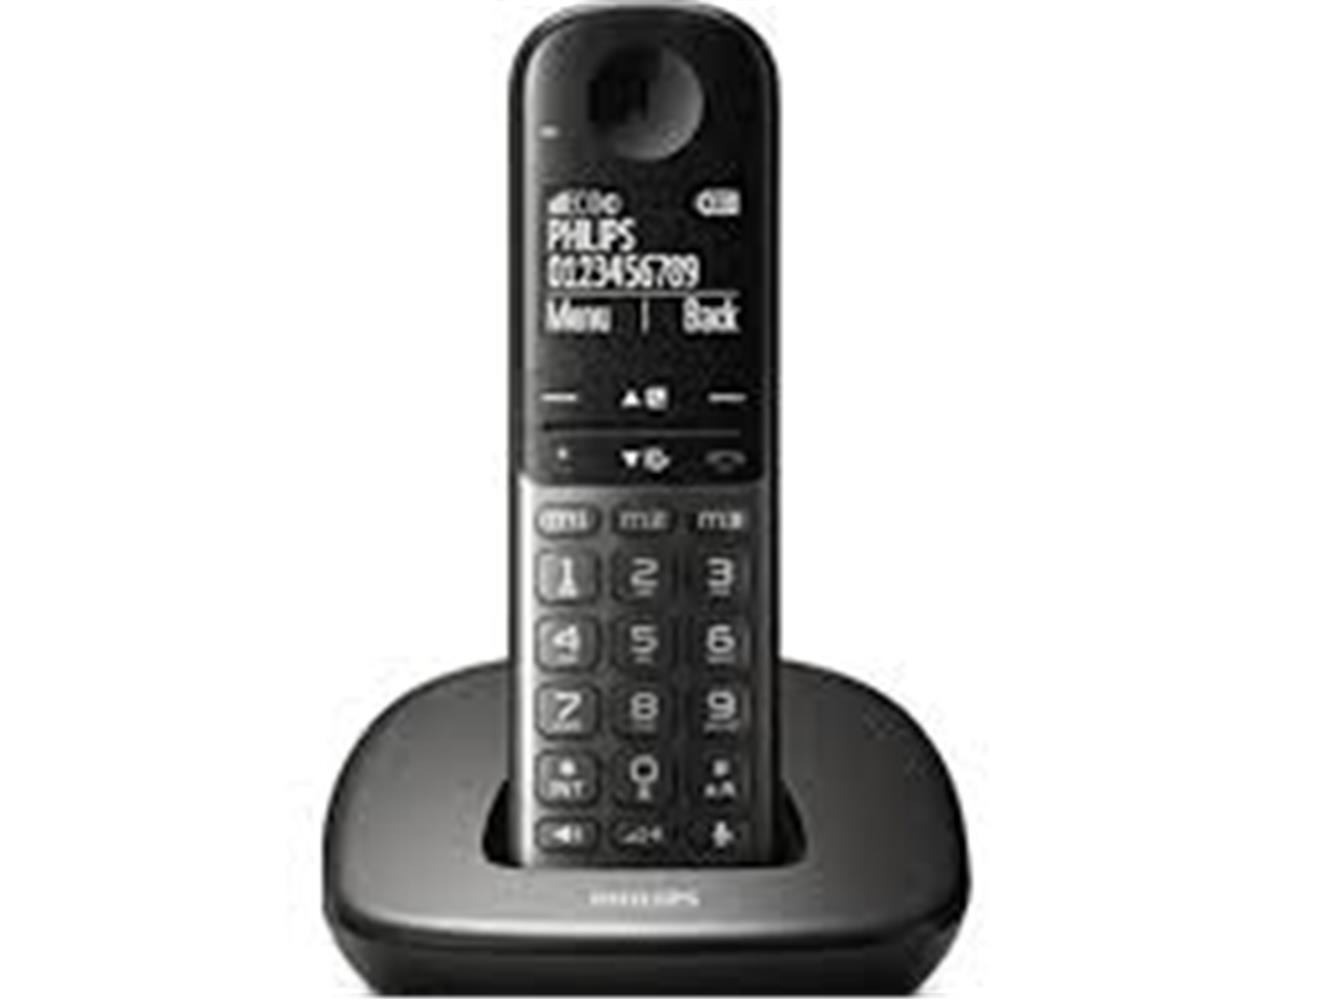 PHILIPS XL4901DS TELSIZ DECT TELEFON 1.9